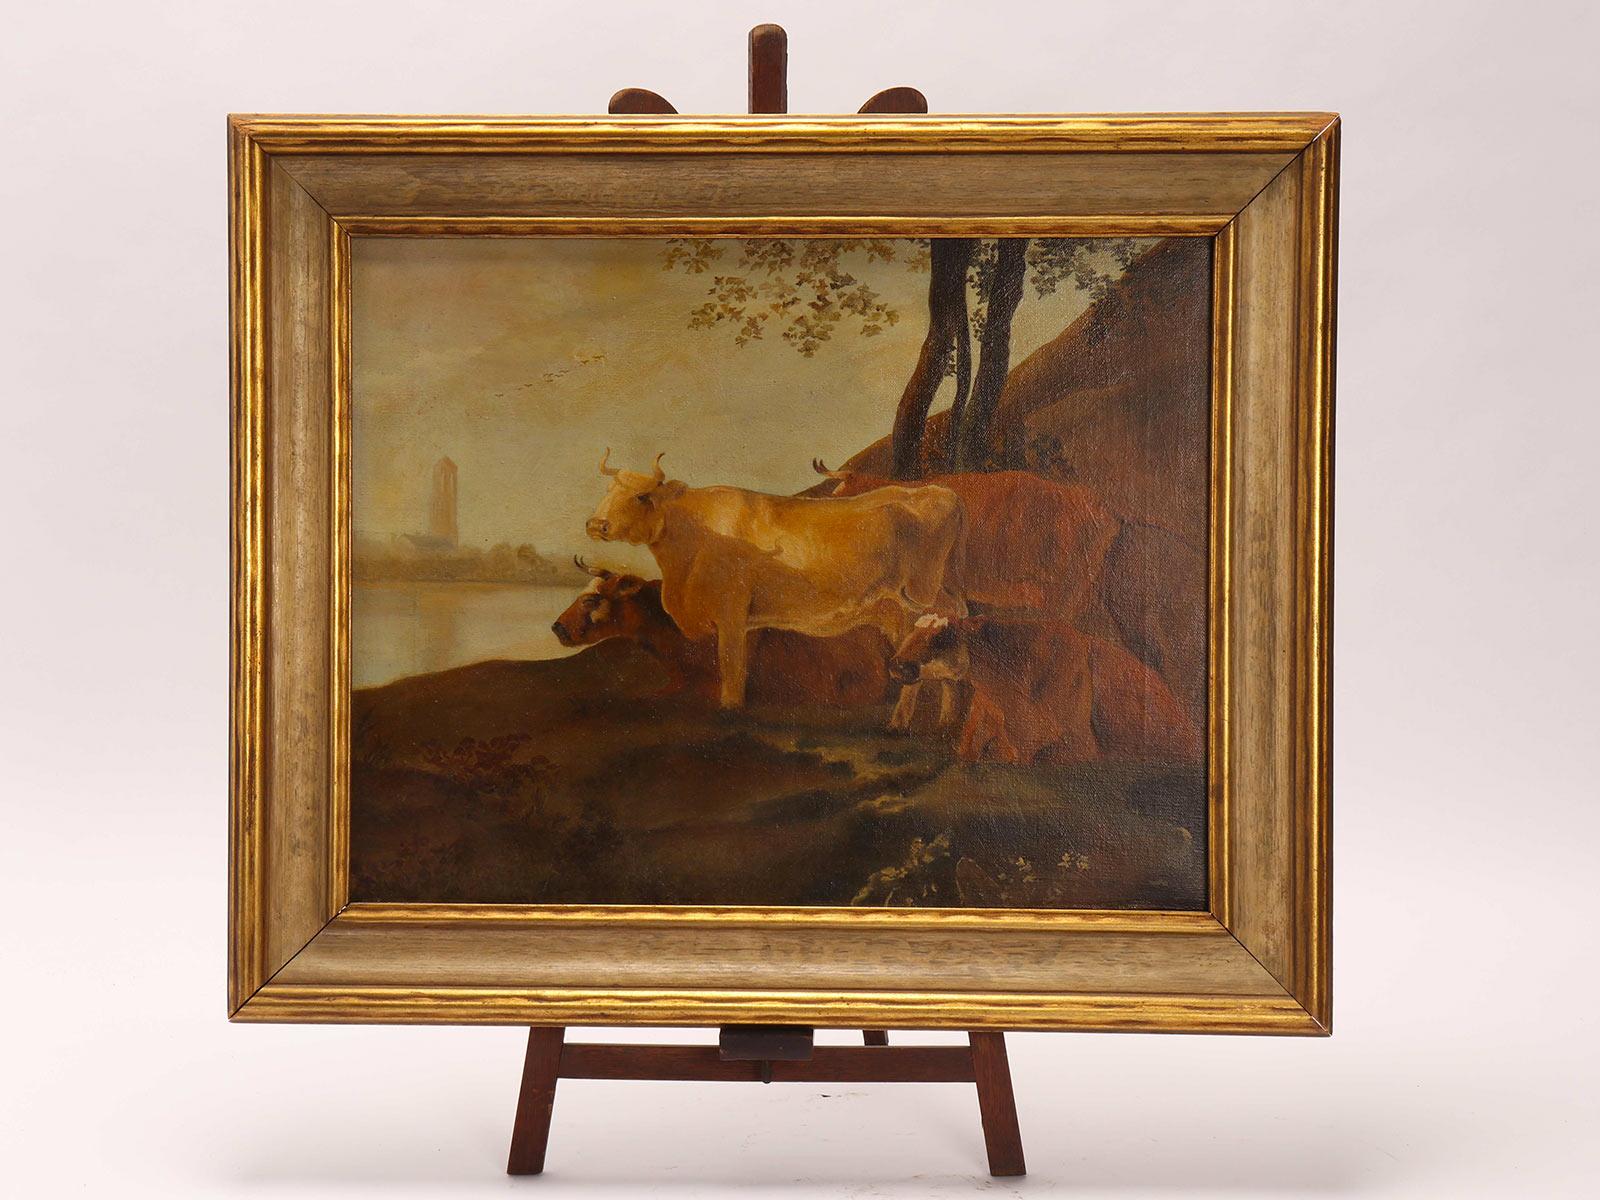 Peinture à l'huile sur toile représentant un groupe de vaches. Cadre peint en or. Autriche, 1880 ca.